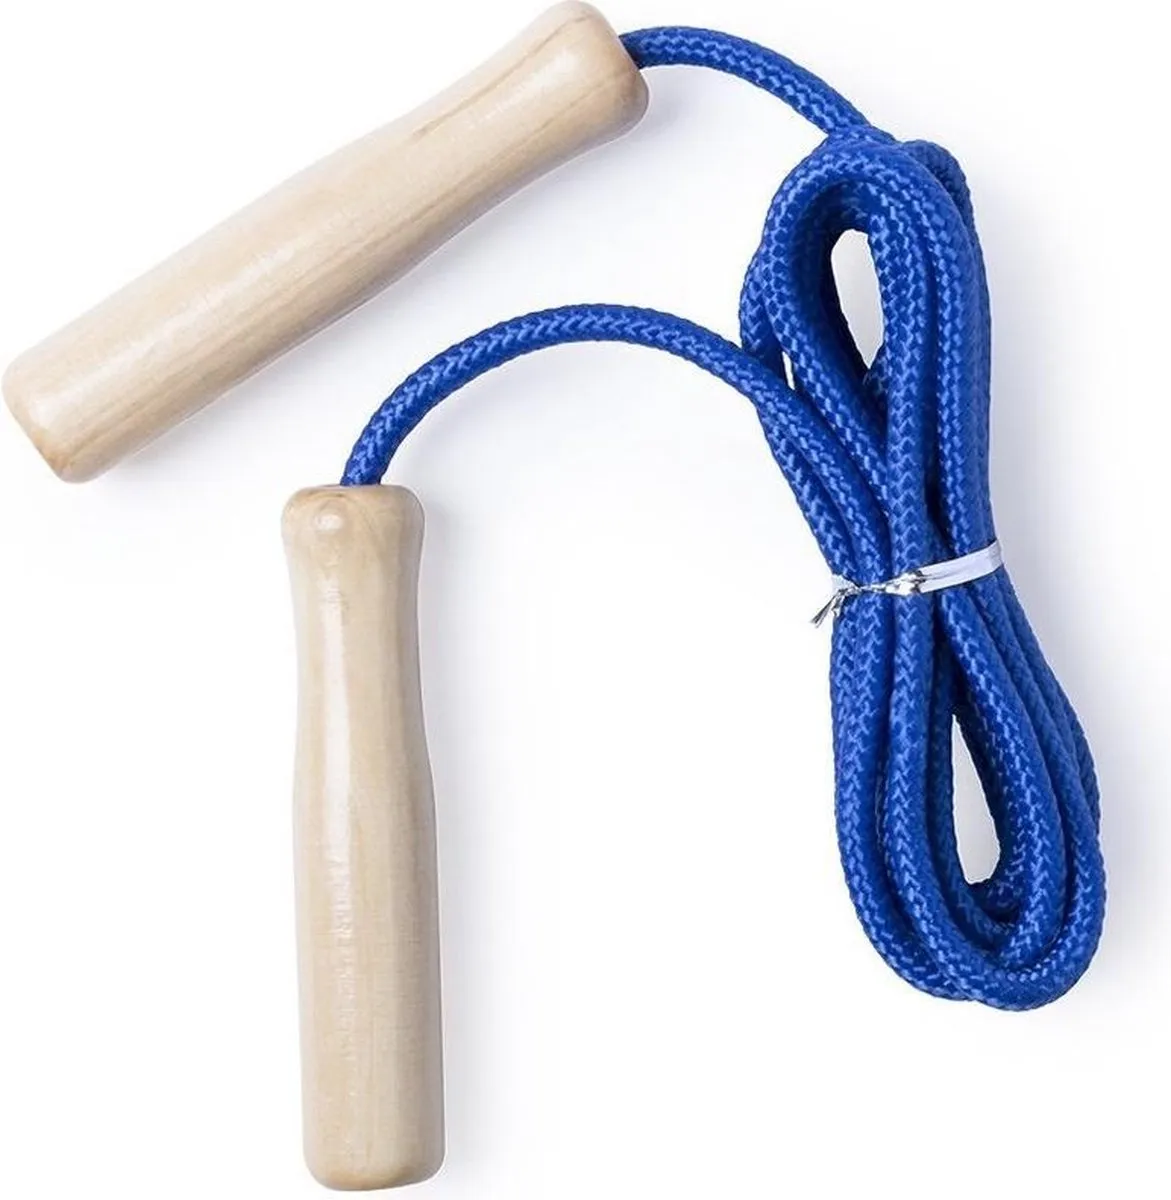 Springtouw blauw 240 cm met houten handvatten - Buitenspeelgoed - Sportief speelgoed voor jongens/meisjes/kinderen speelgoed